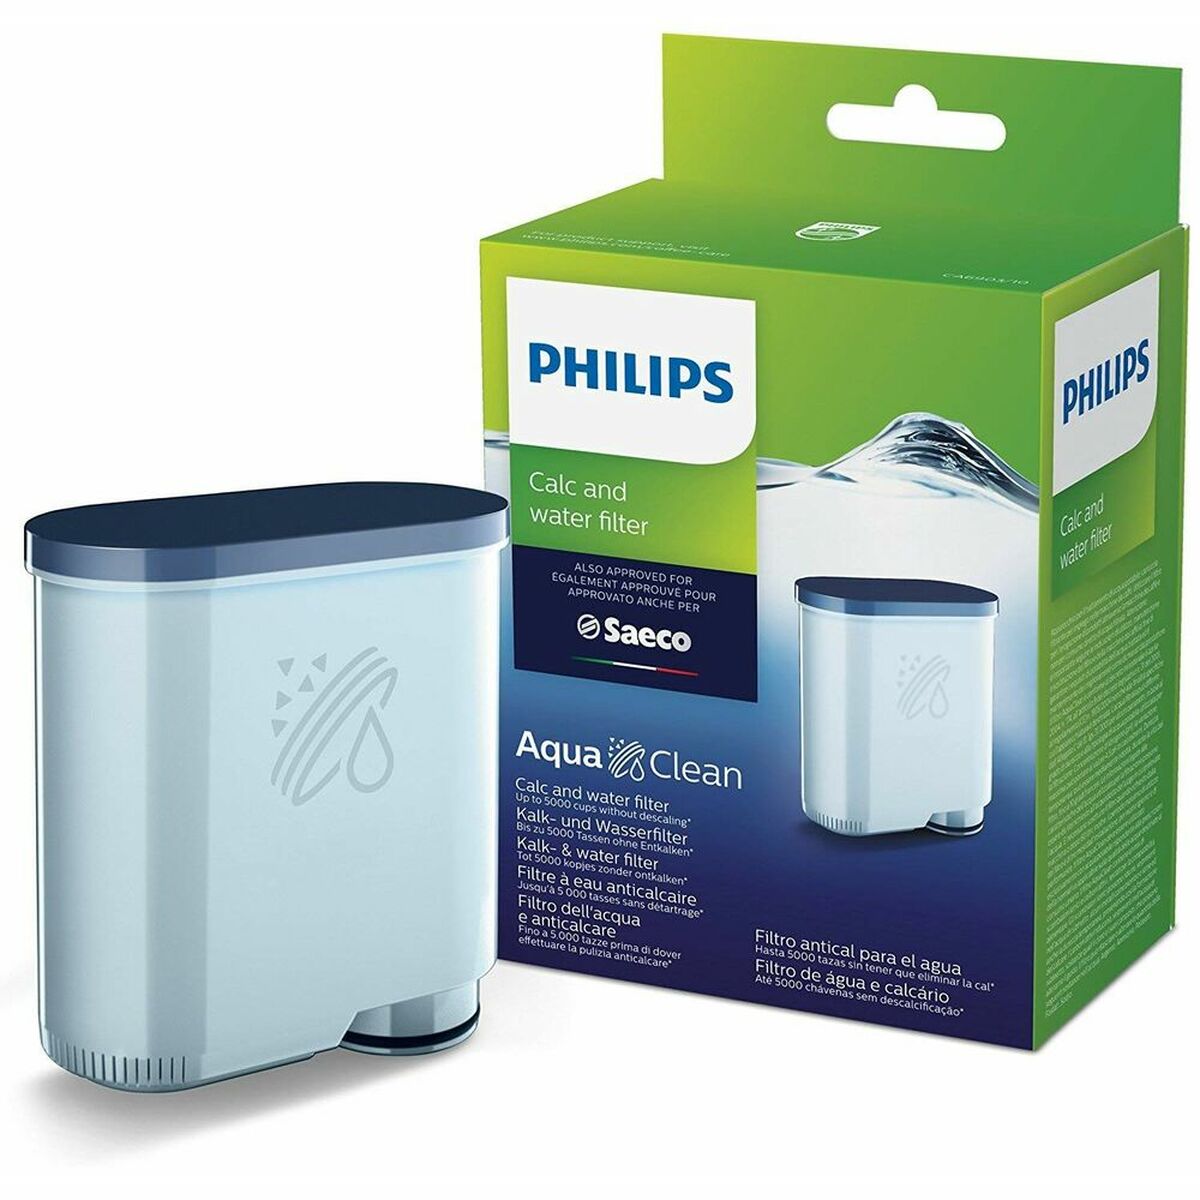 Filter till filtreringskanna Philips CA6903/10 AquaClean Kaffebryggare